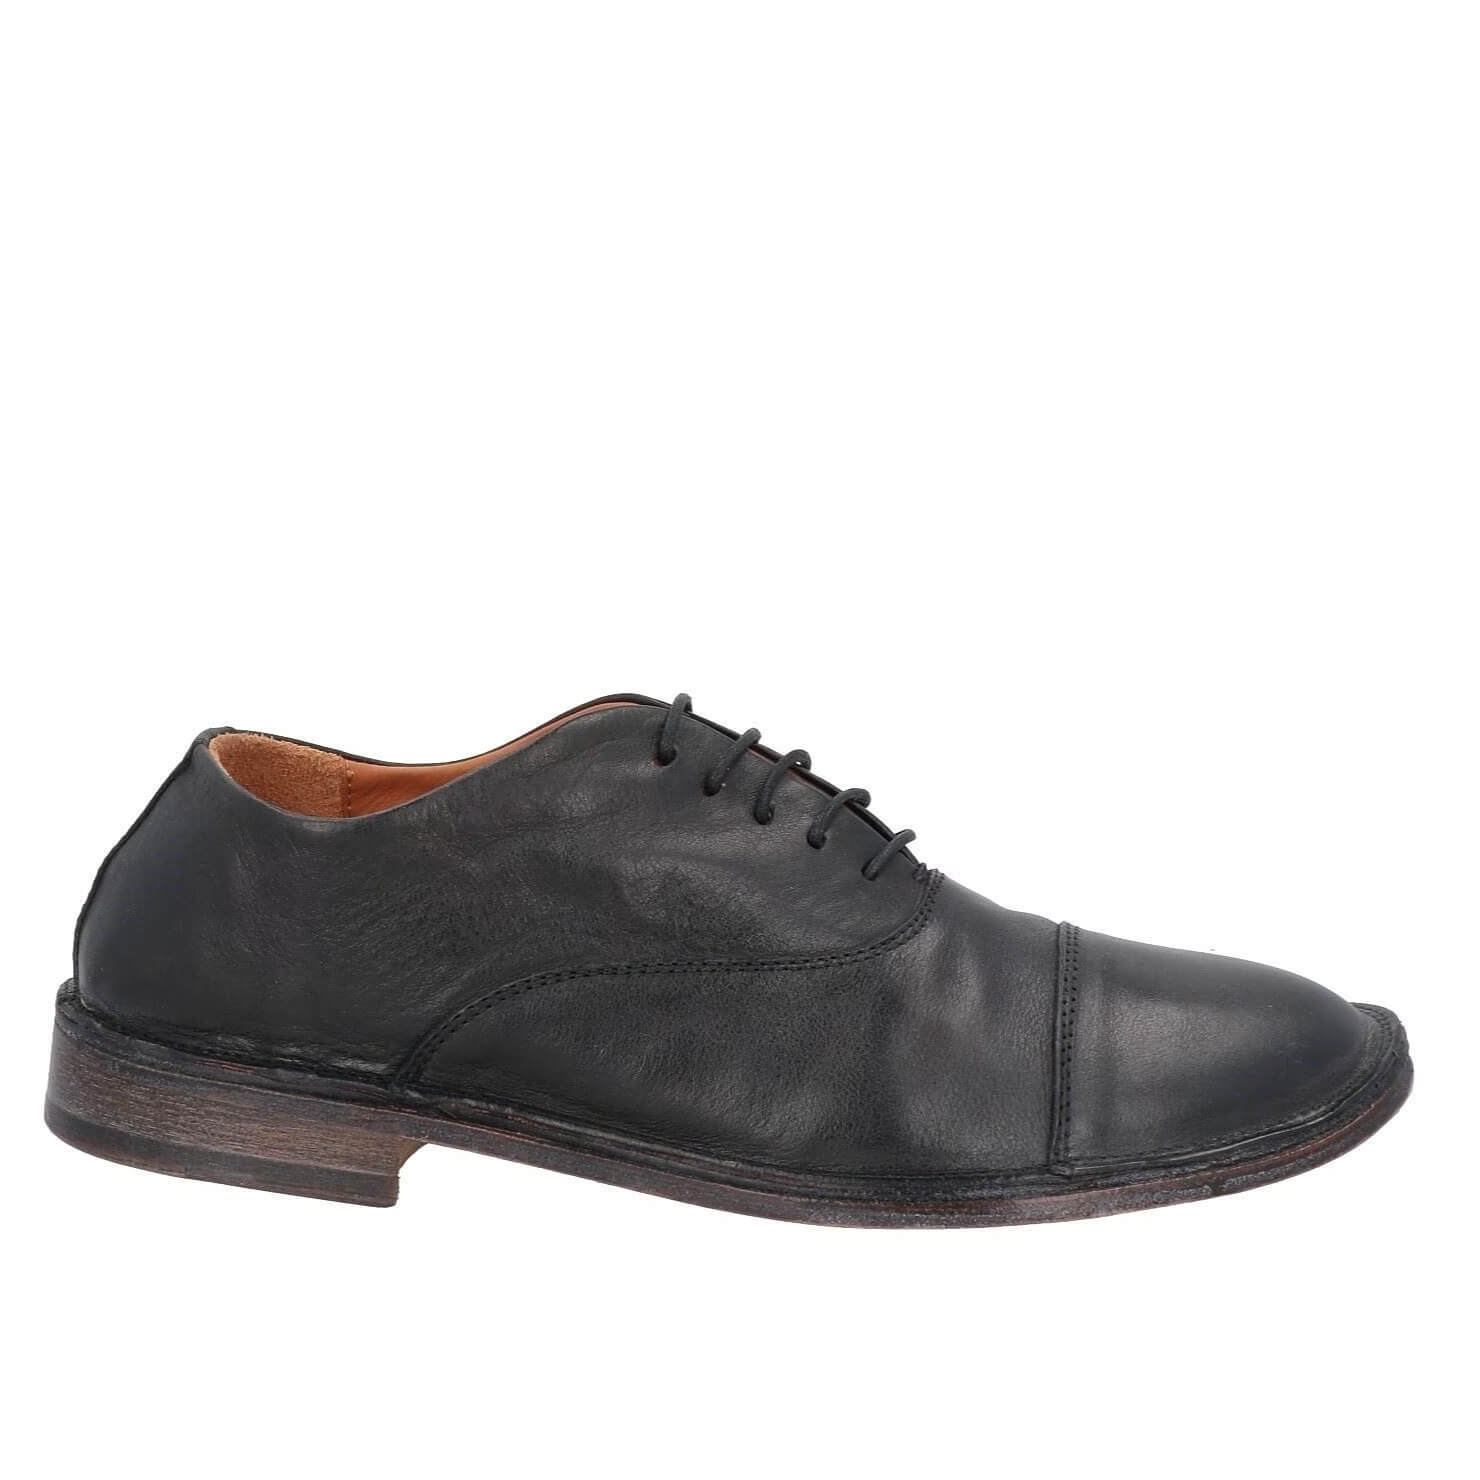 Туфли Moma Laced, черный мужские классические туфли из натуральной кожи оксфорды свадебные туфли круглый носок на шнуровке для бизнеса работы черные белые